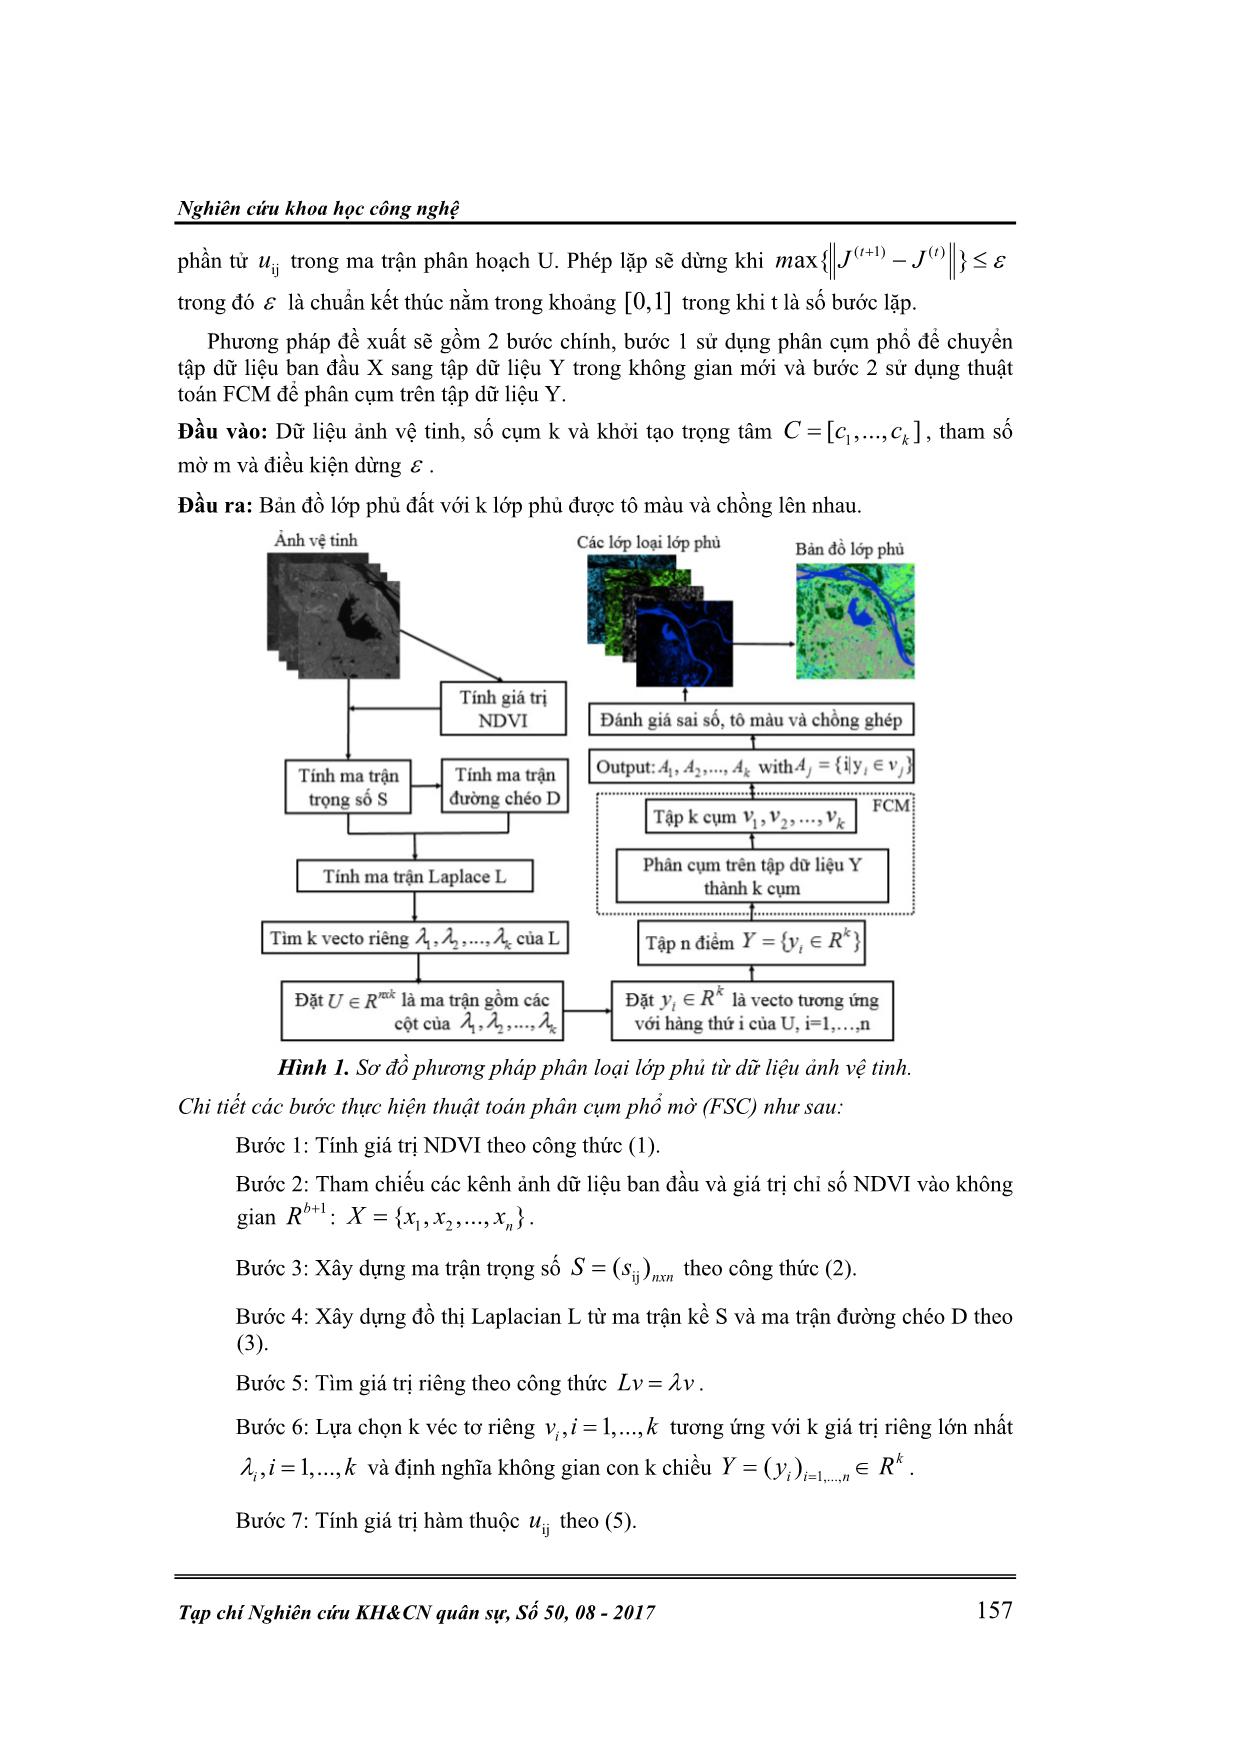 Phân loại lớp phủ từ dữ liệu ảnh vệ tinh dựa trên phương pháp phân cụm phổ trang 5